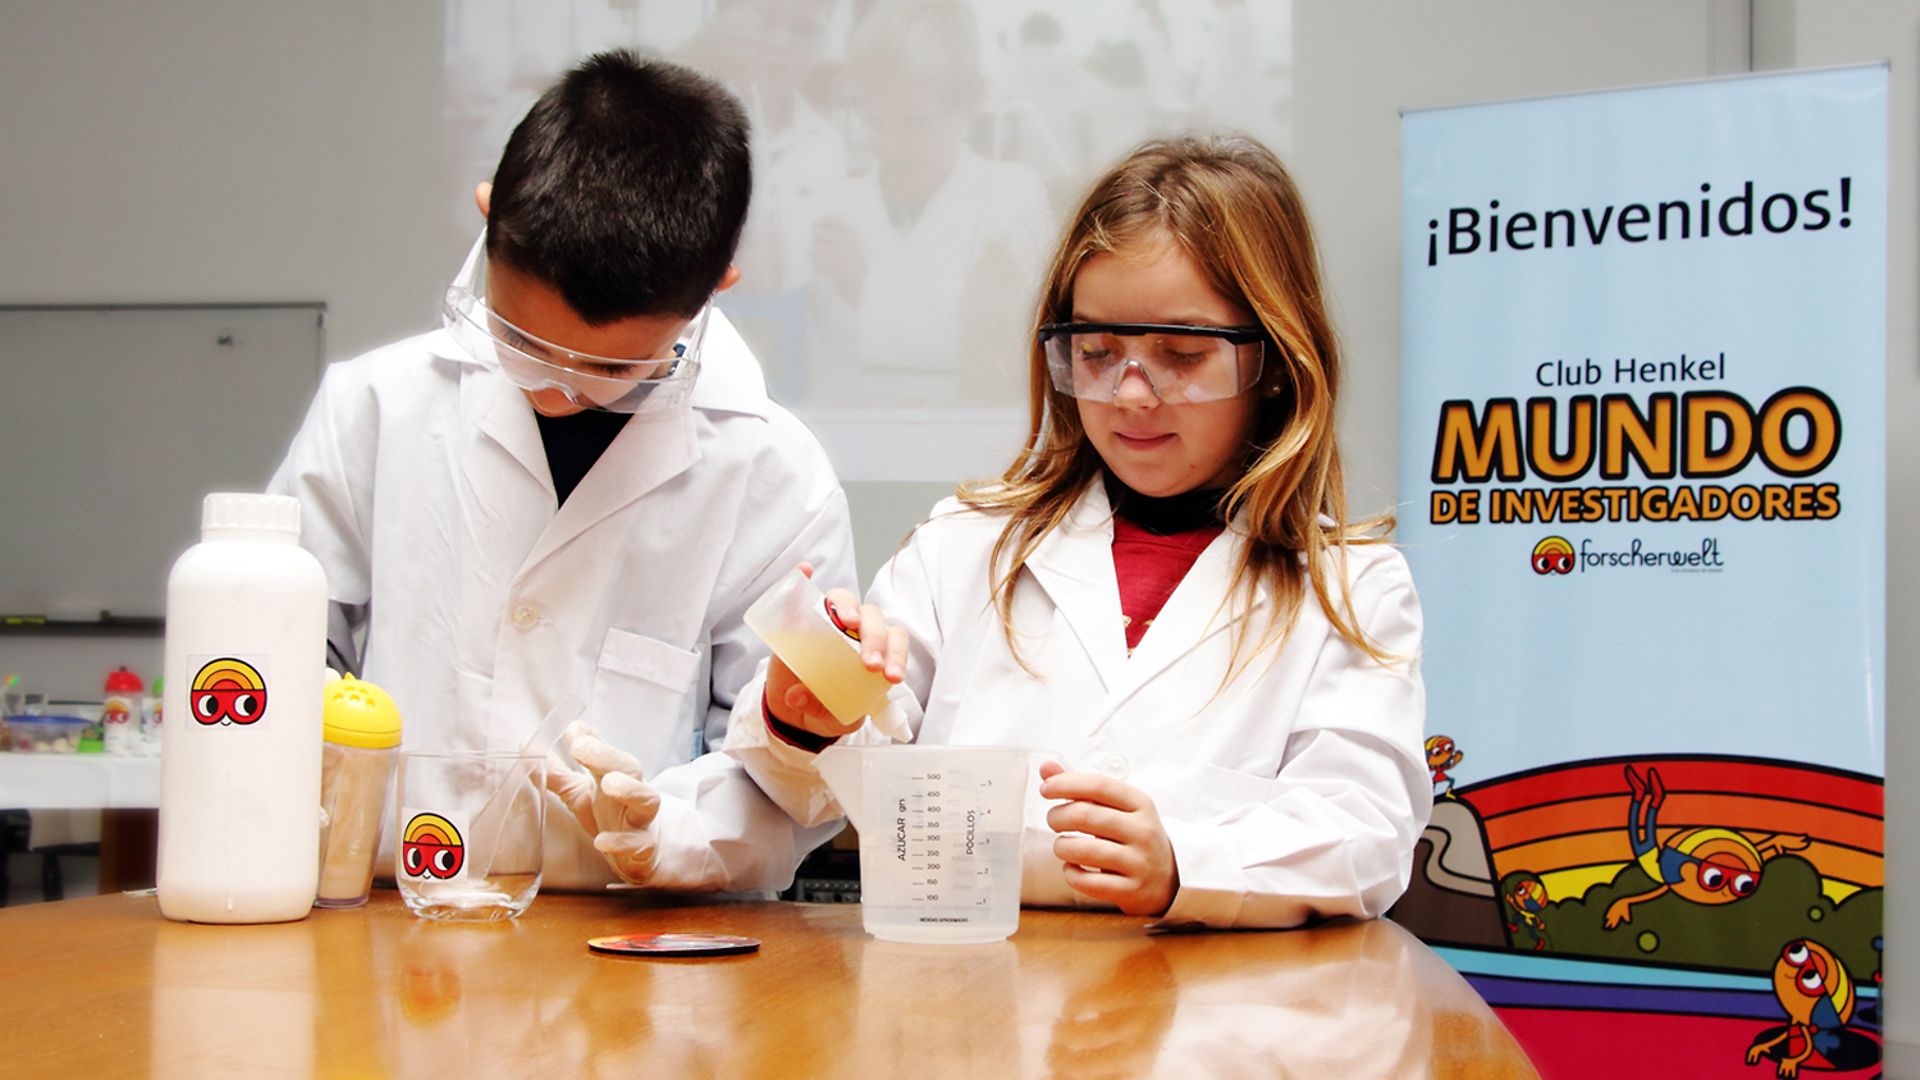 Club Henkel Mundo de Investigadores América Latina: una nina y un niño demonstrando un experiment en una mesa.